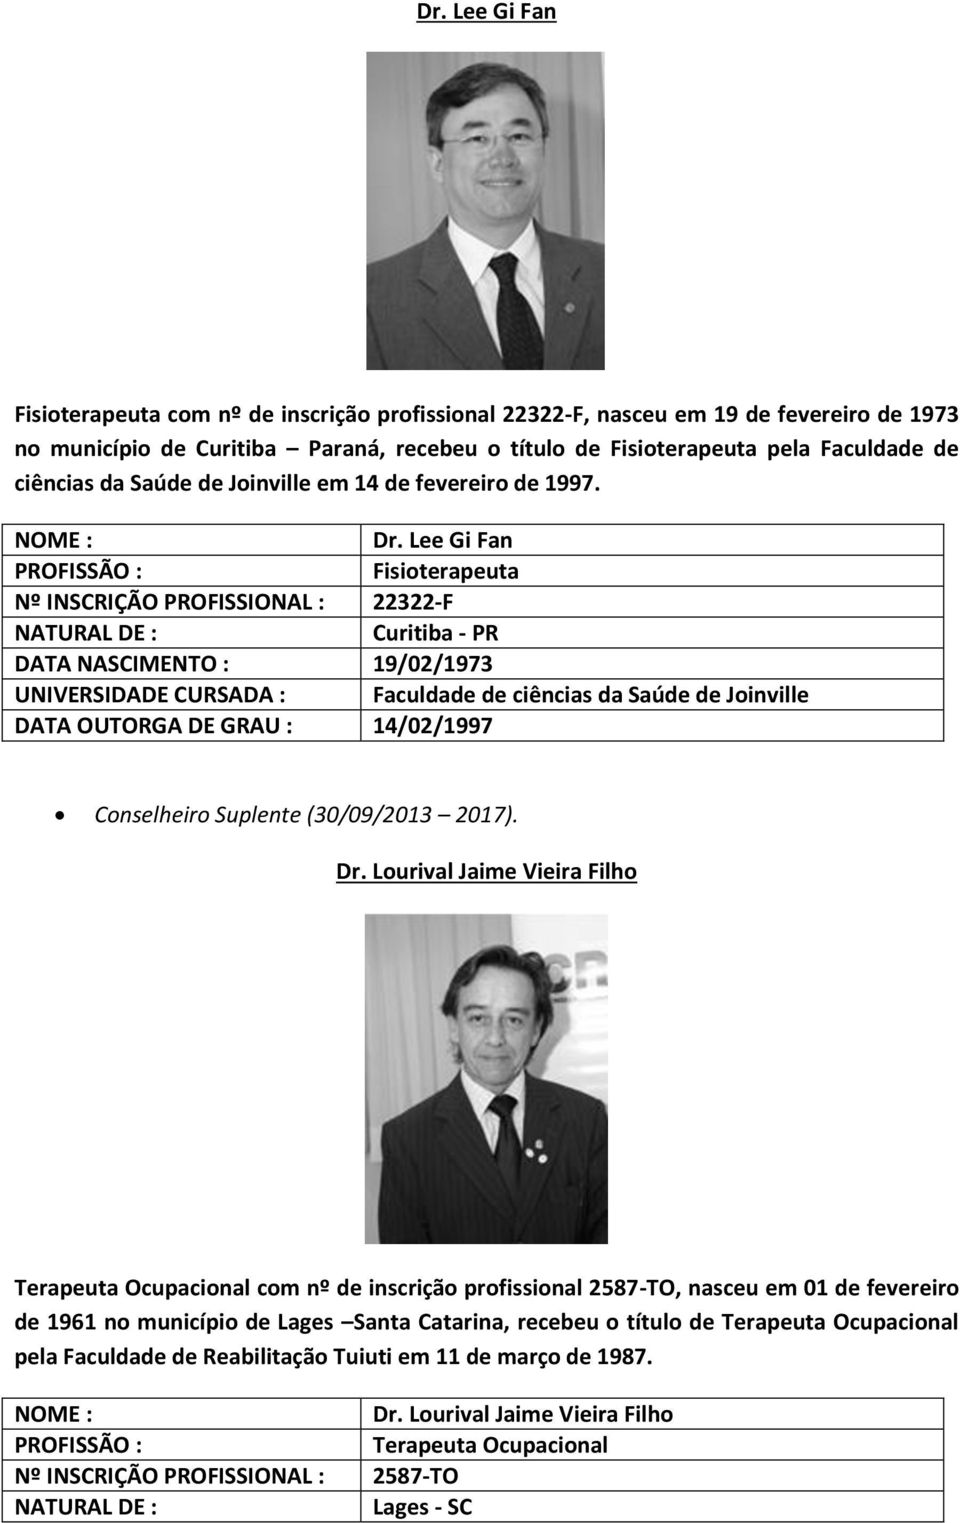 Lee Gi Fan Nº INSCRIÇÃO PROFISSIONAL : 22322-F Curitiba - PR DATA NASCIMENTO : 19/02/1973 UNIVERSIDADE CURSADA : Faculdade de ciências da Saúde de Joinville DATA OUTORGA DE GRAU : 14/02/1997